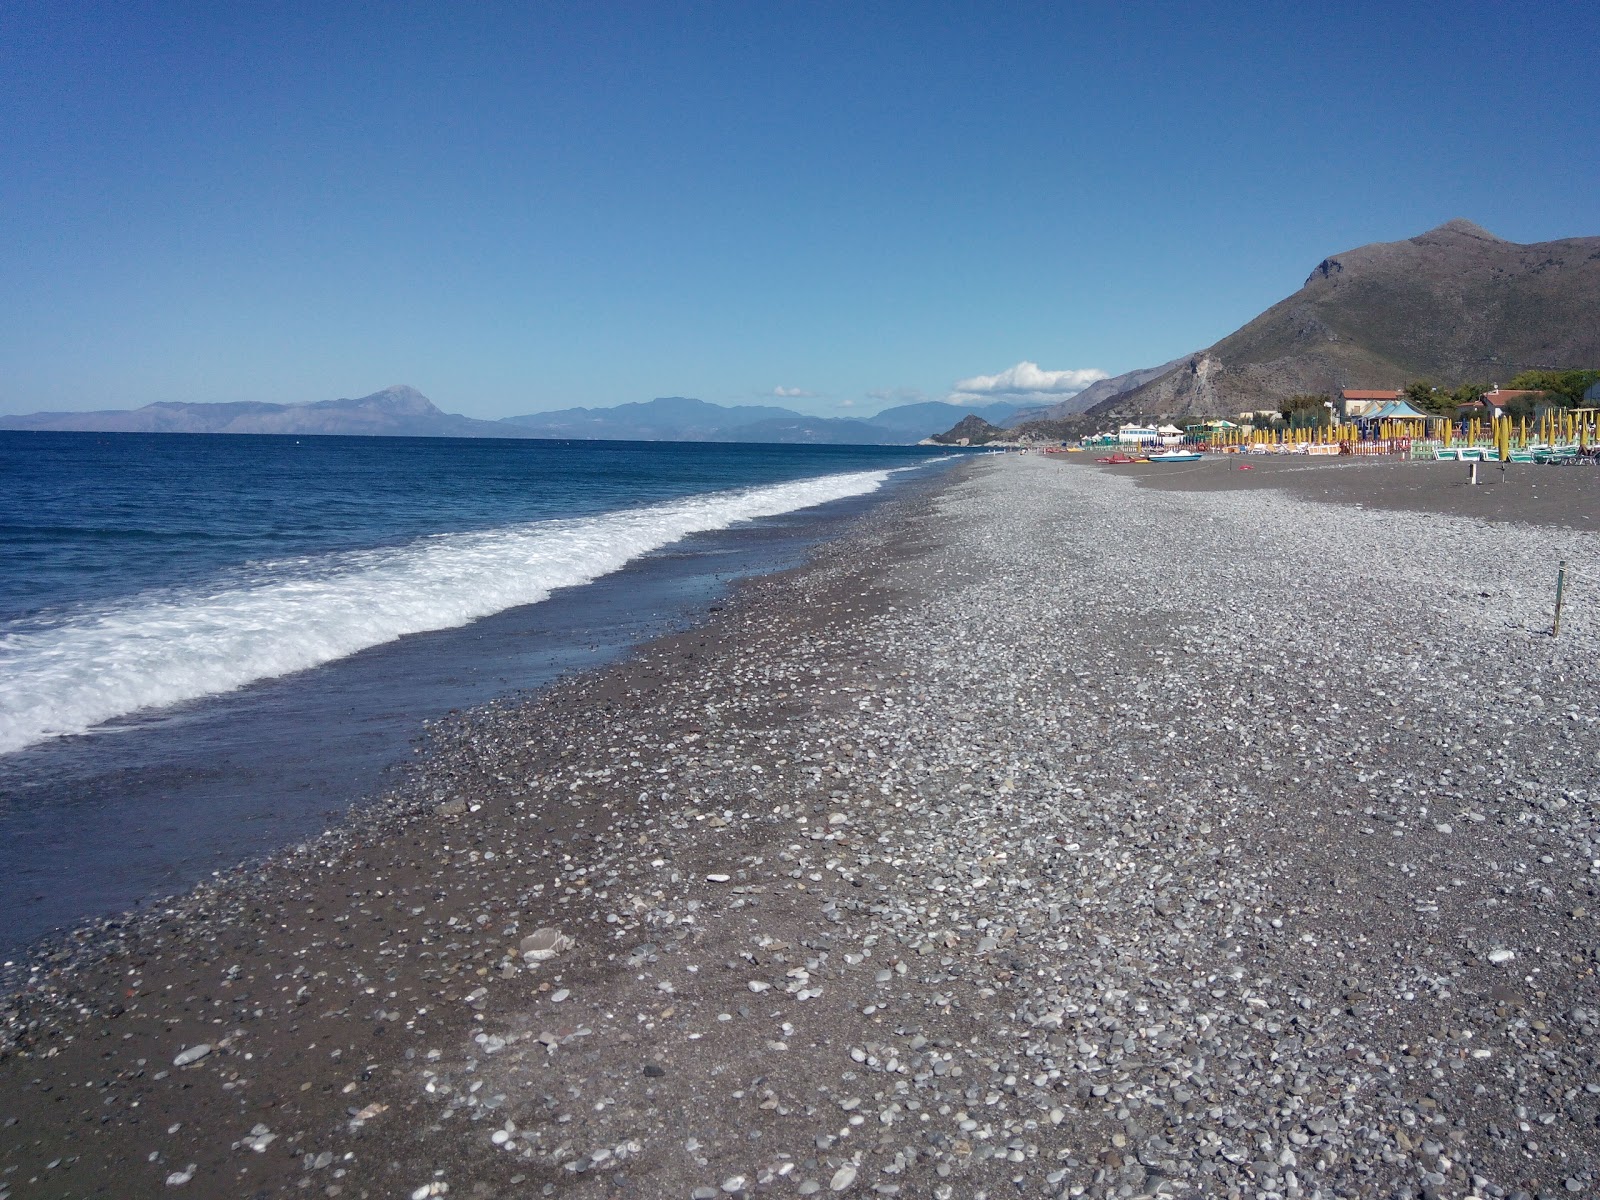 Foto von Spiaggia di Tortora mit schwarzer sand&kies Oberfläche